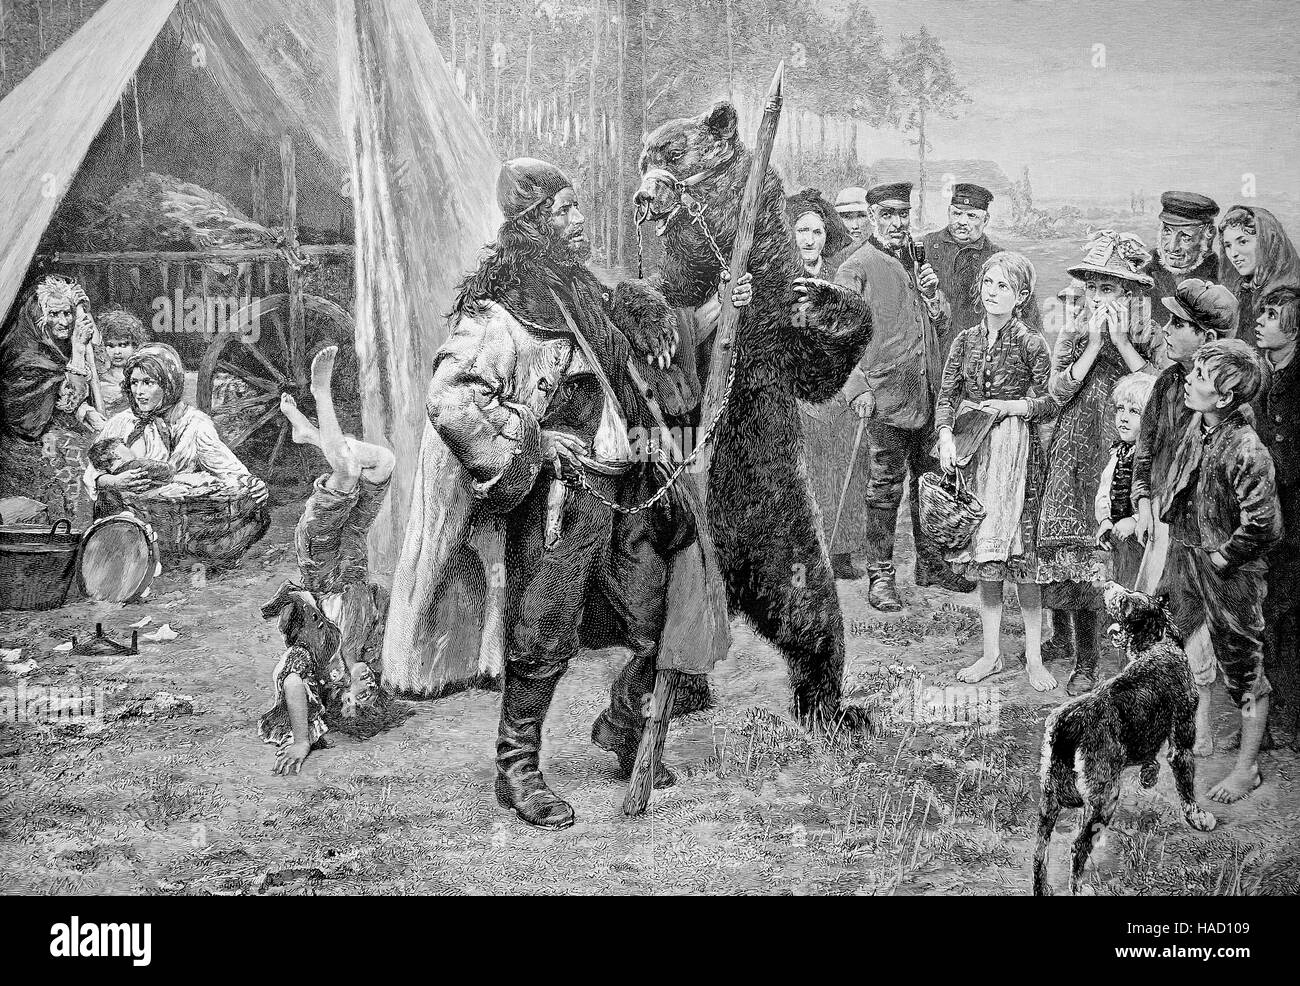 Homme avec un ours apprivoisé, souvent appelé un ours dansant, par Paul Meyersheim, illustration publié en 1880 Banque D'Images